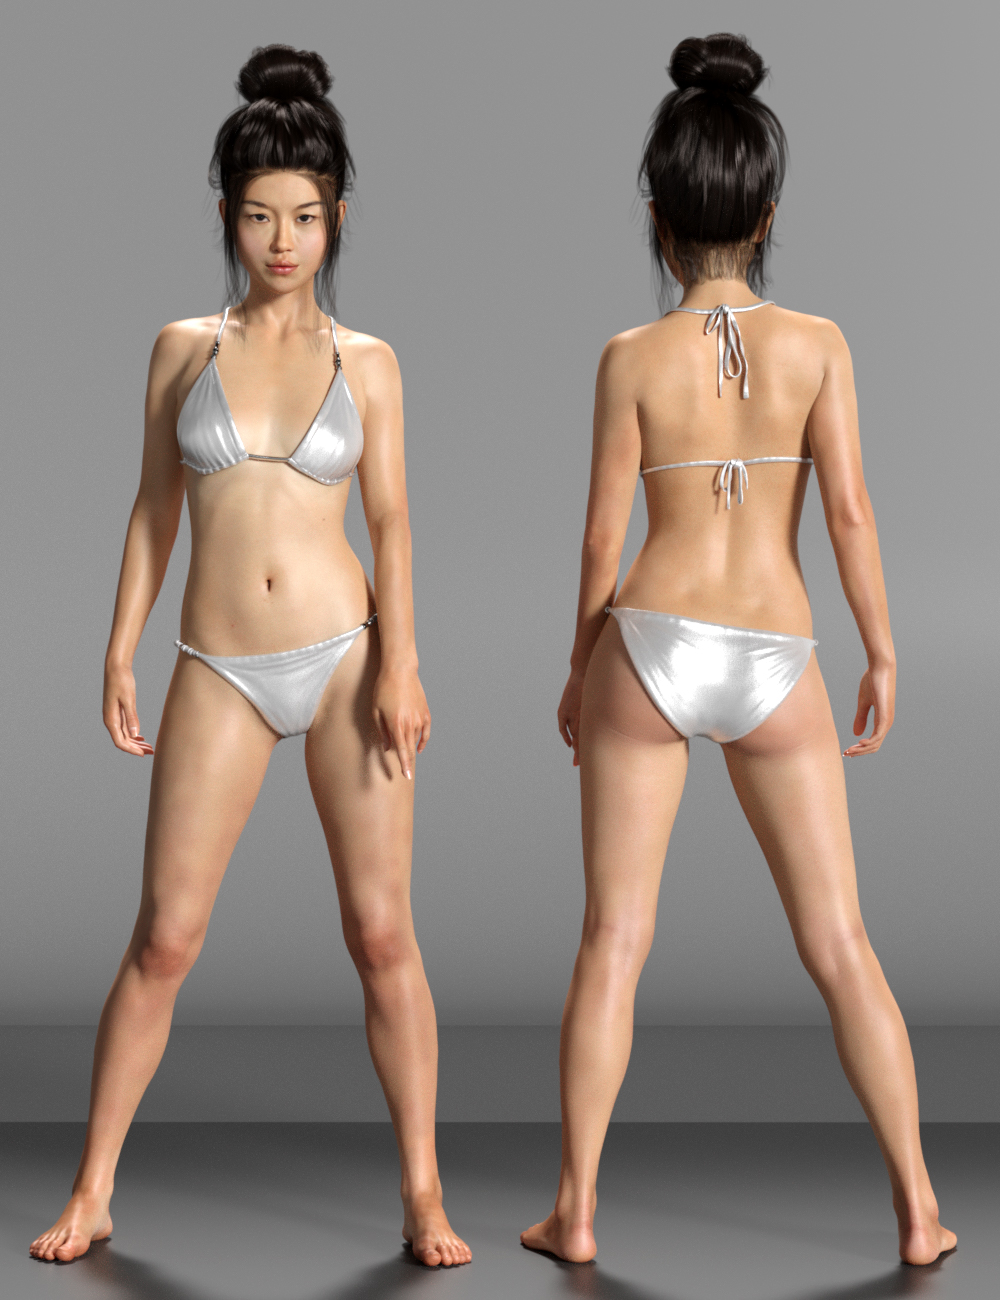 East Asian Women for Mei Lin 8 by: Virtual_World, 3D Models by Daz 3D